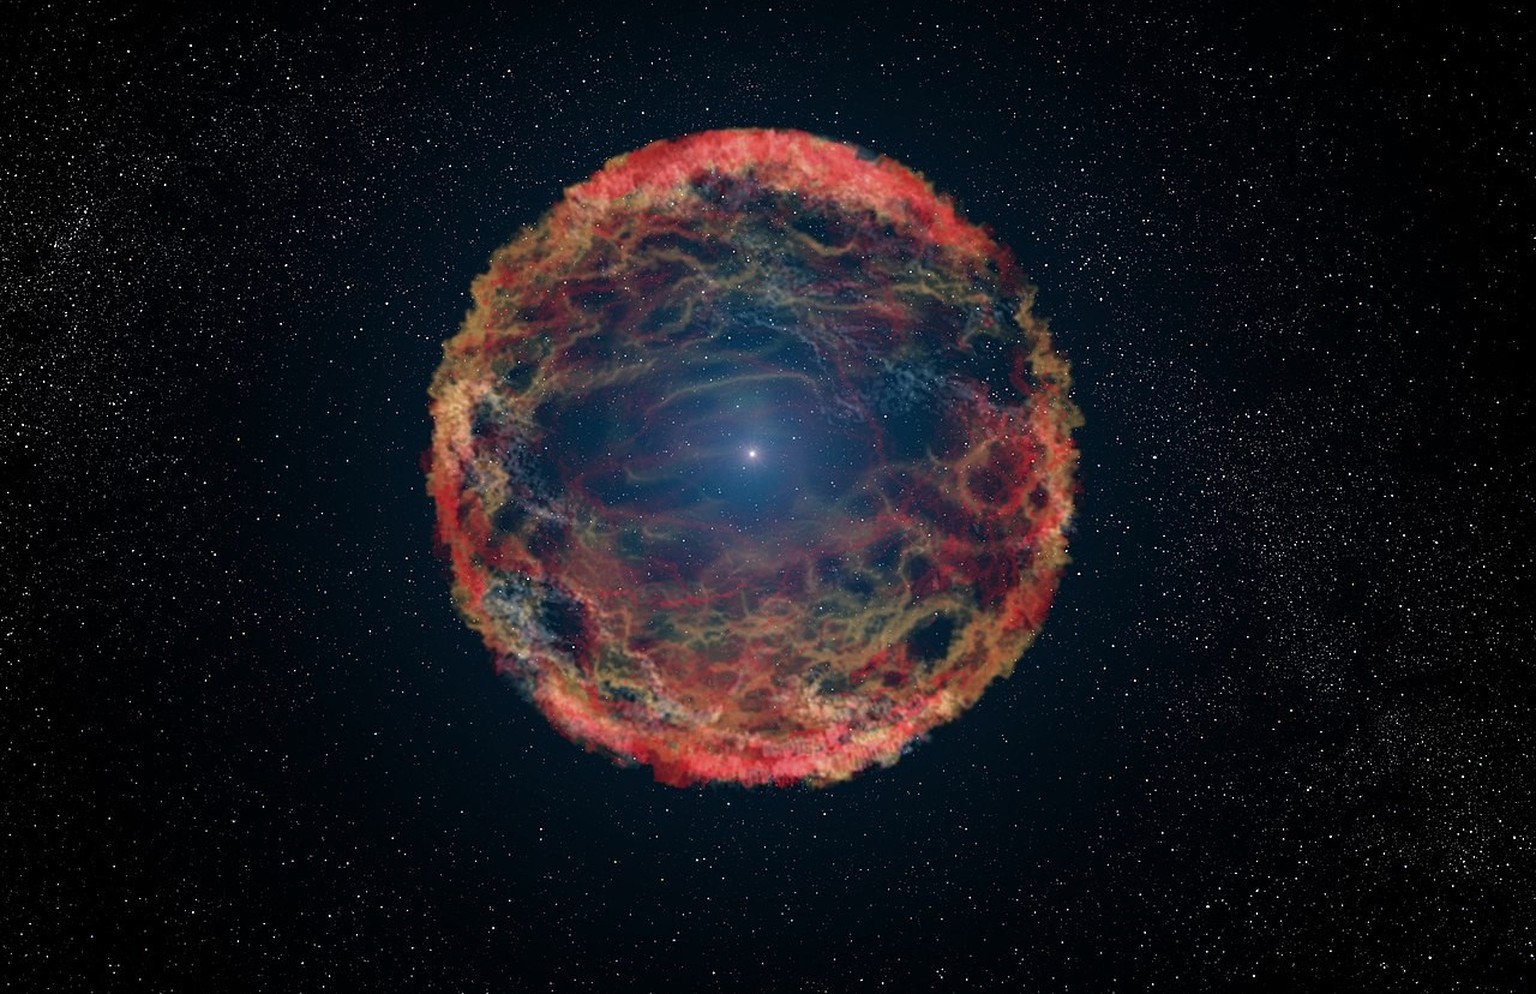 Künstlerische Darstellung einer Supernova
By ESA/Hubble, CC BY 4.0, https://commons.wikimedia.org/w/index.php?curid=35306789